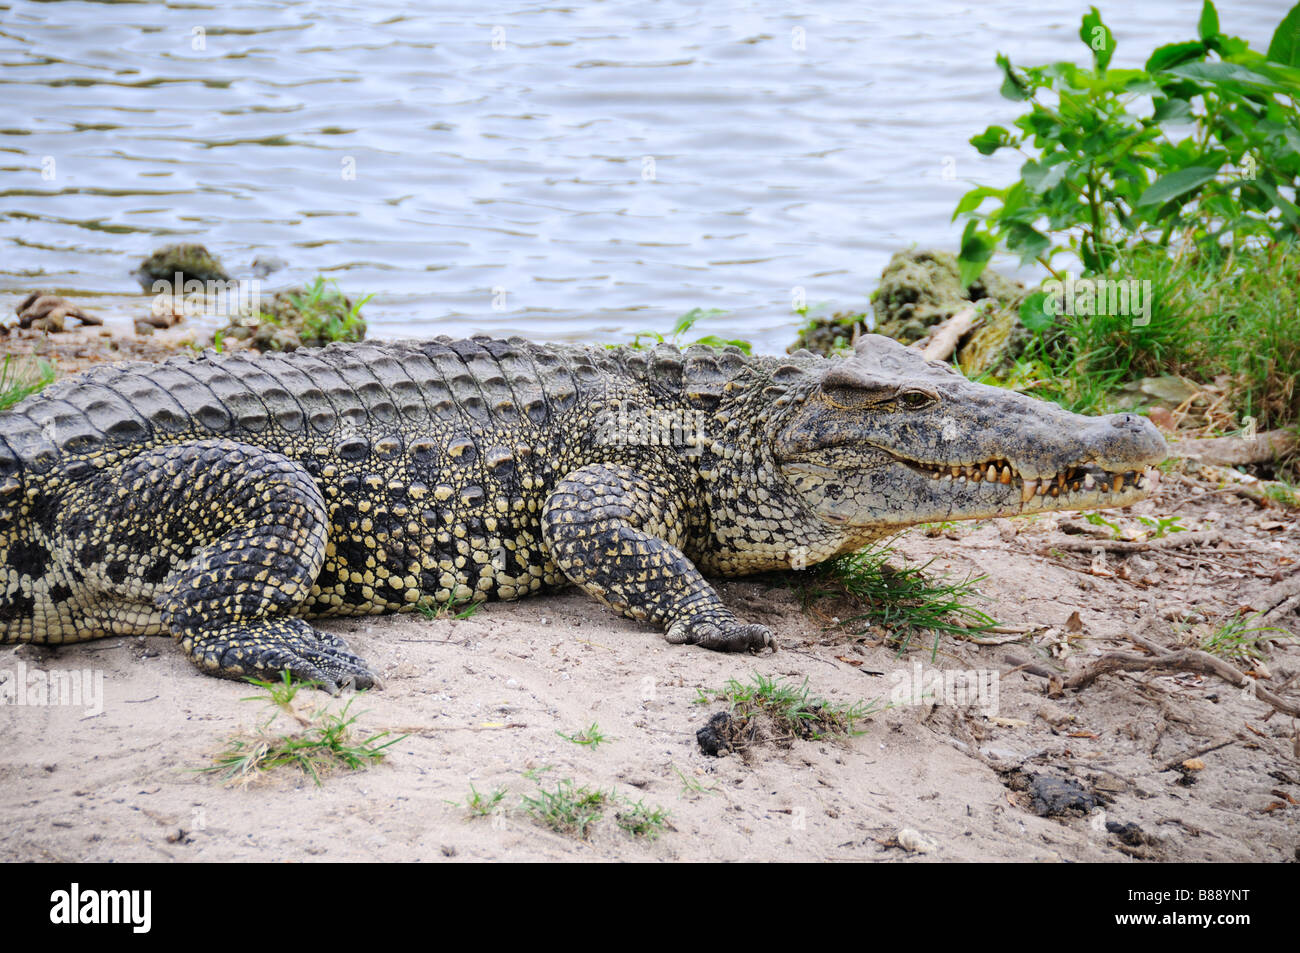 Alligators on natural habitat on Guama Lagoon, Cuba Stock Photo